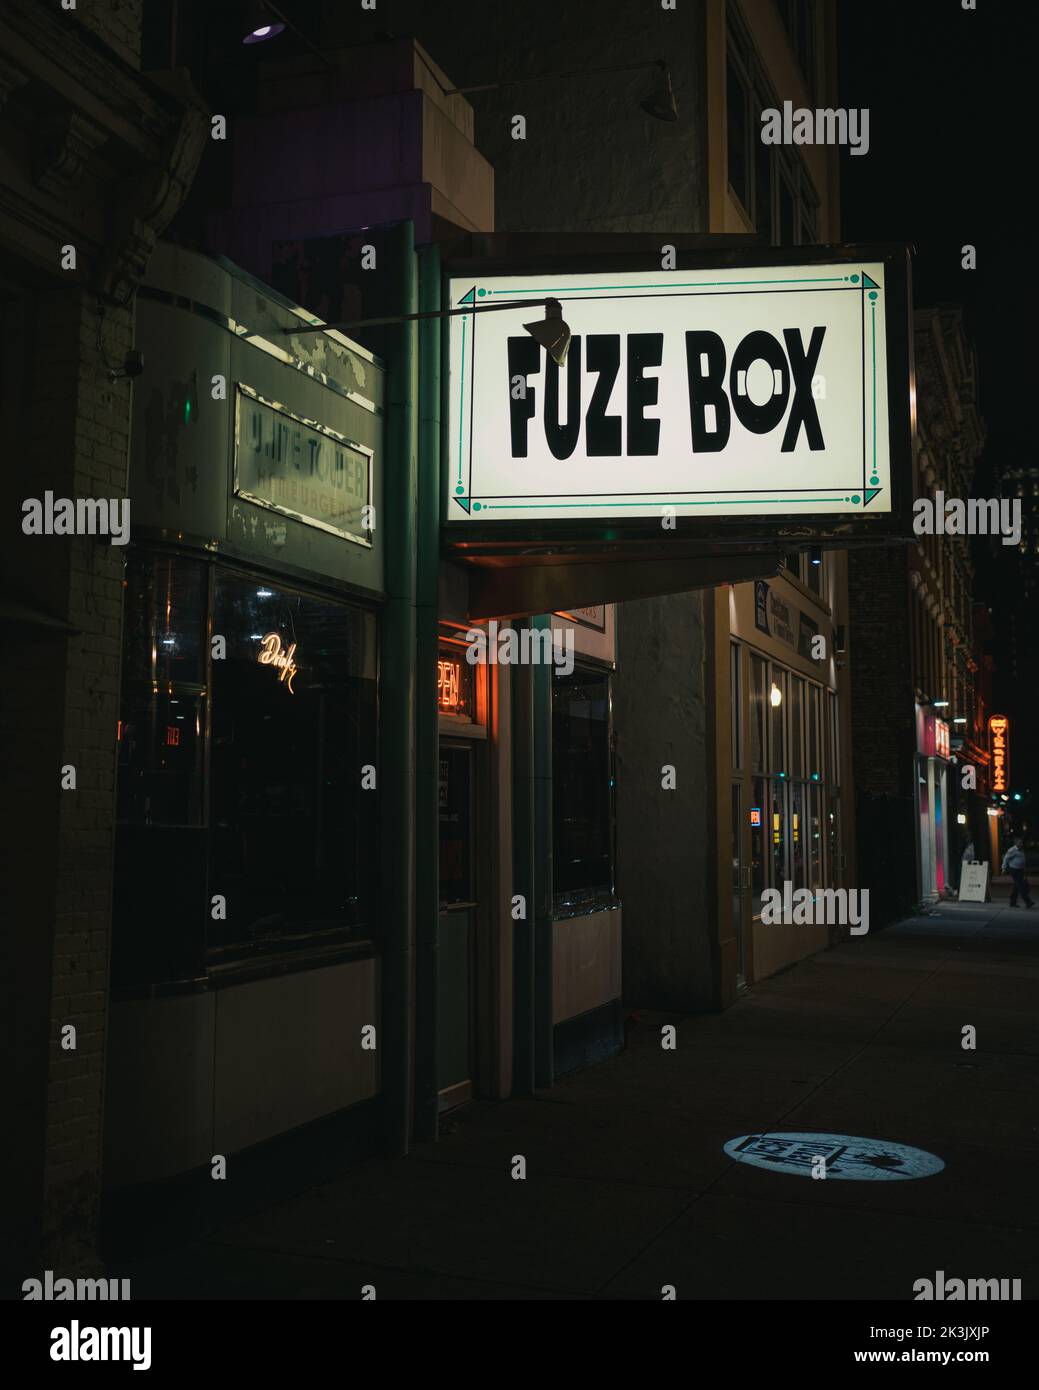 Fuze Box sign at night, Albany, New York Stock Photo